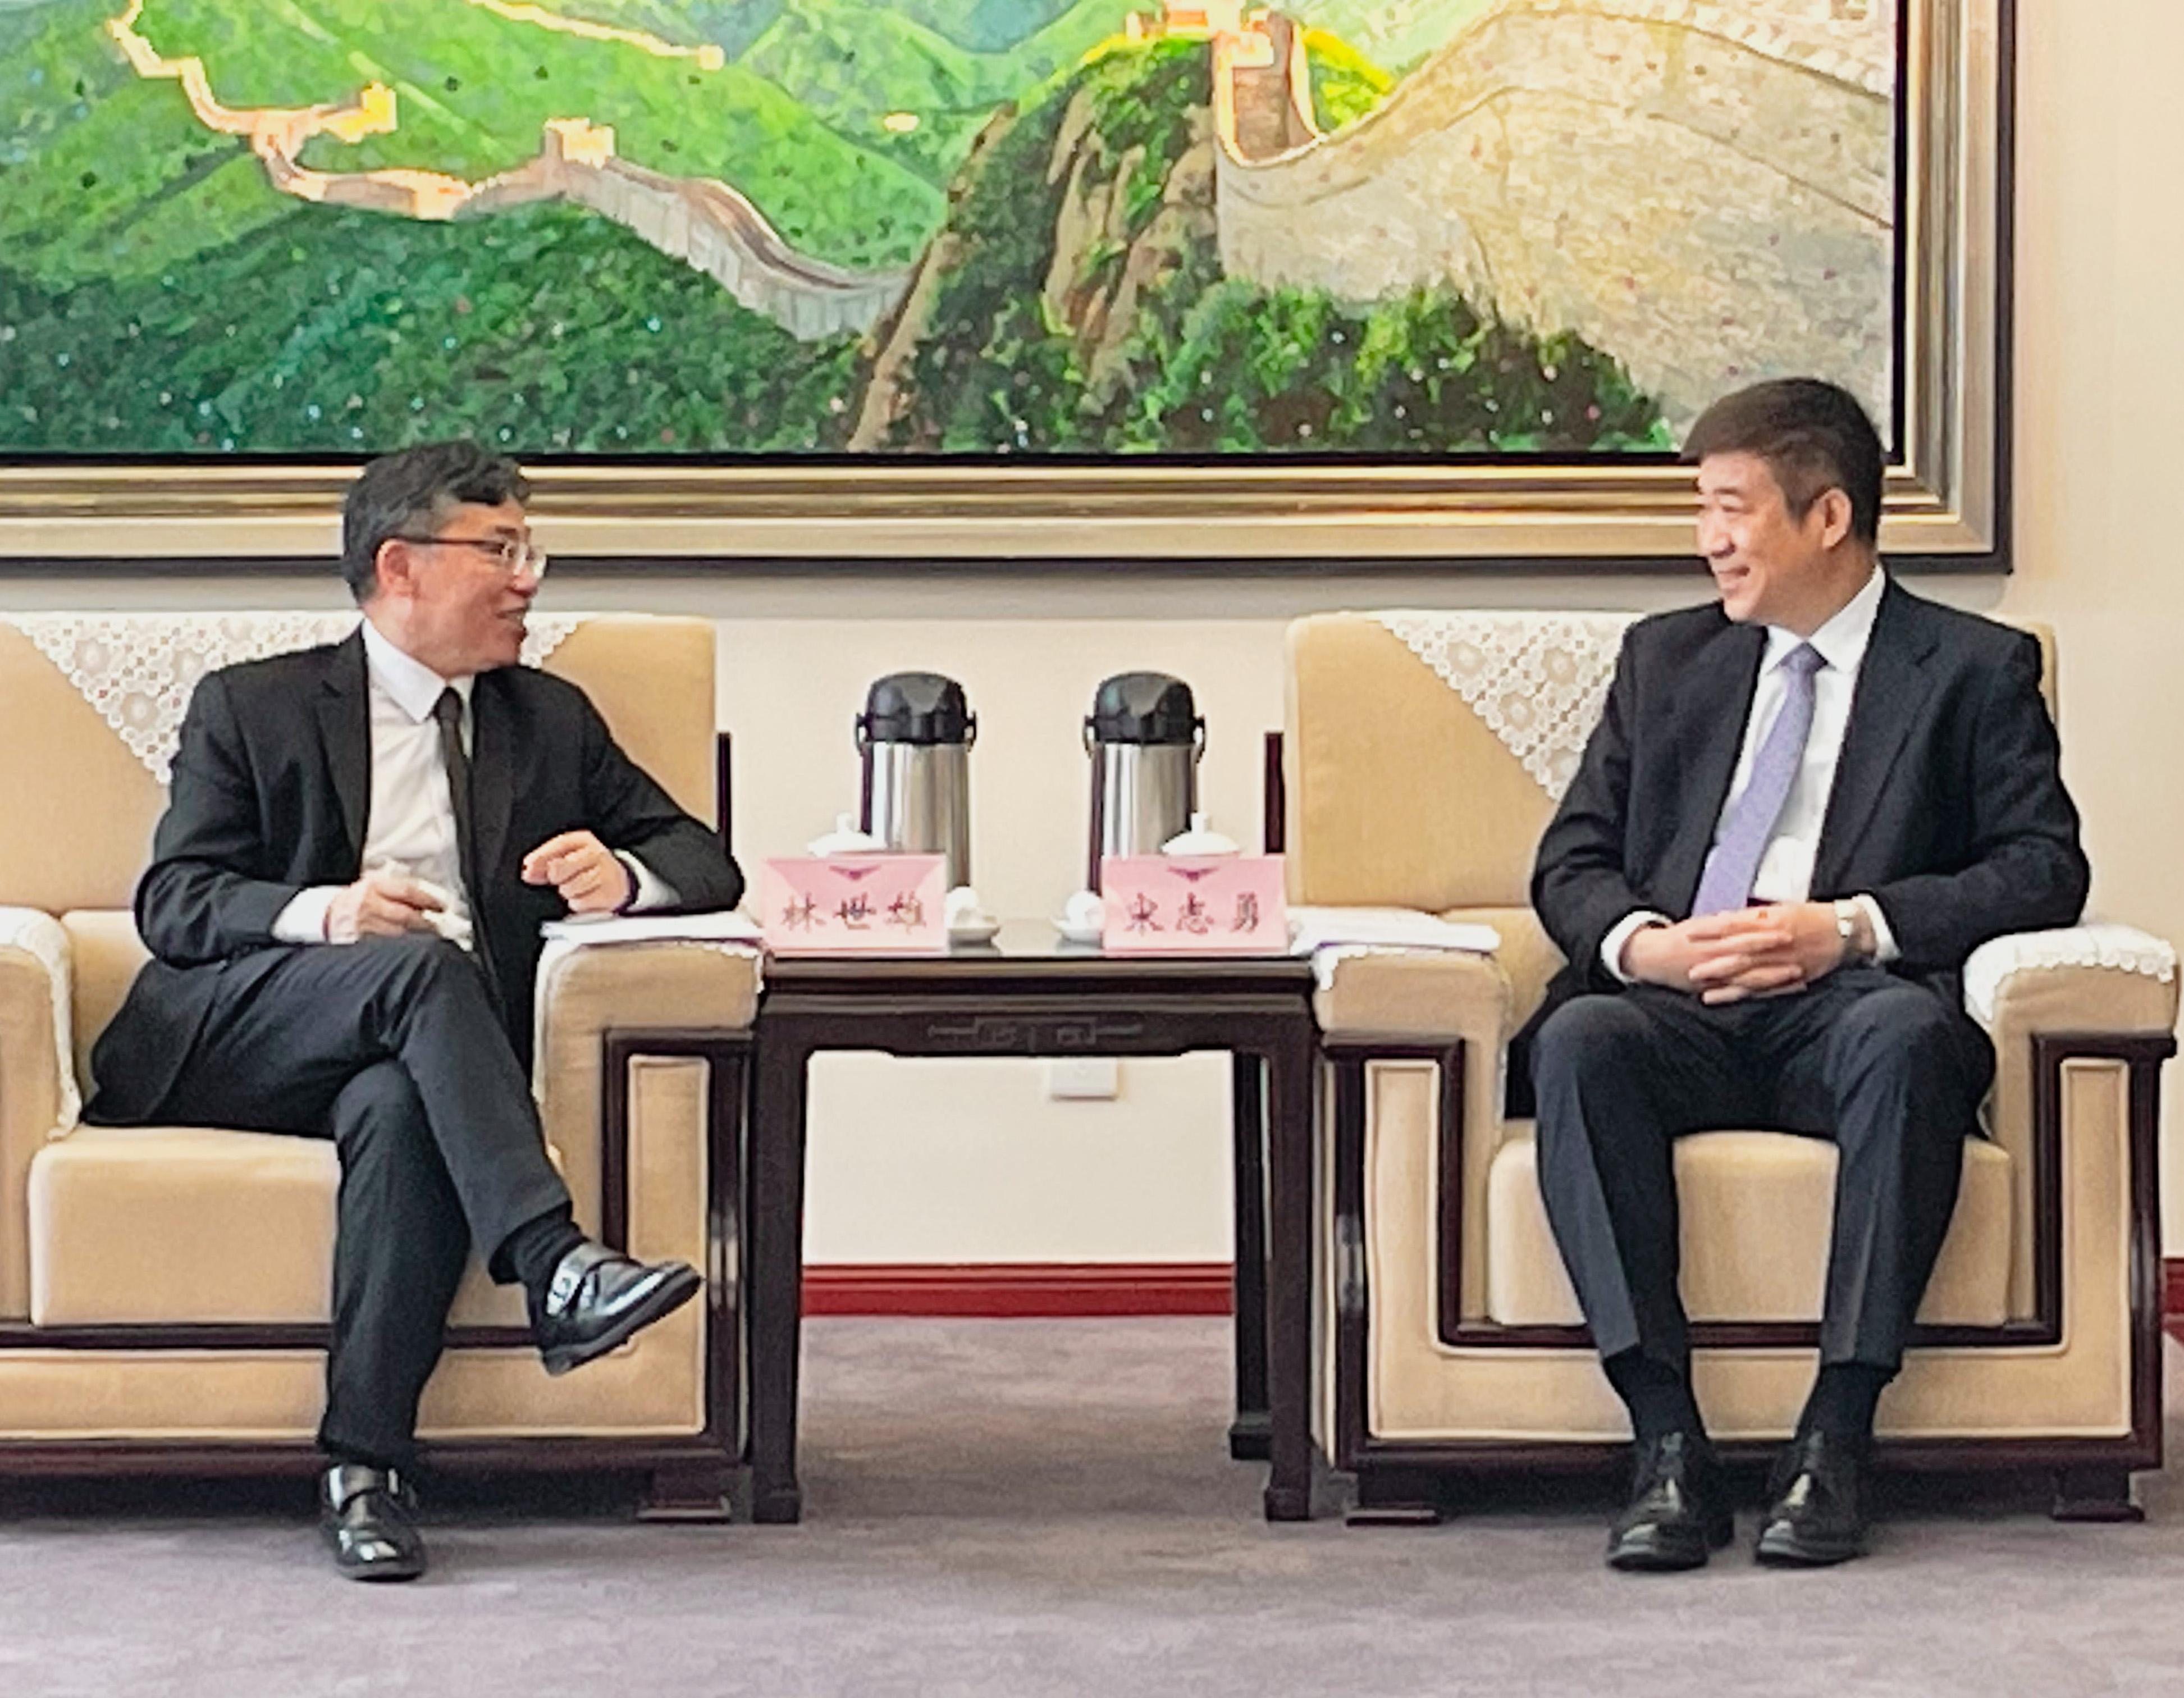 運輸及物流局局長林世雄今日（四月十九日）展開北京兩天的訪問行程。圖示林世雄（左）與國家民用航空局局長宋志勇會面。
 
